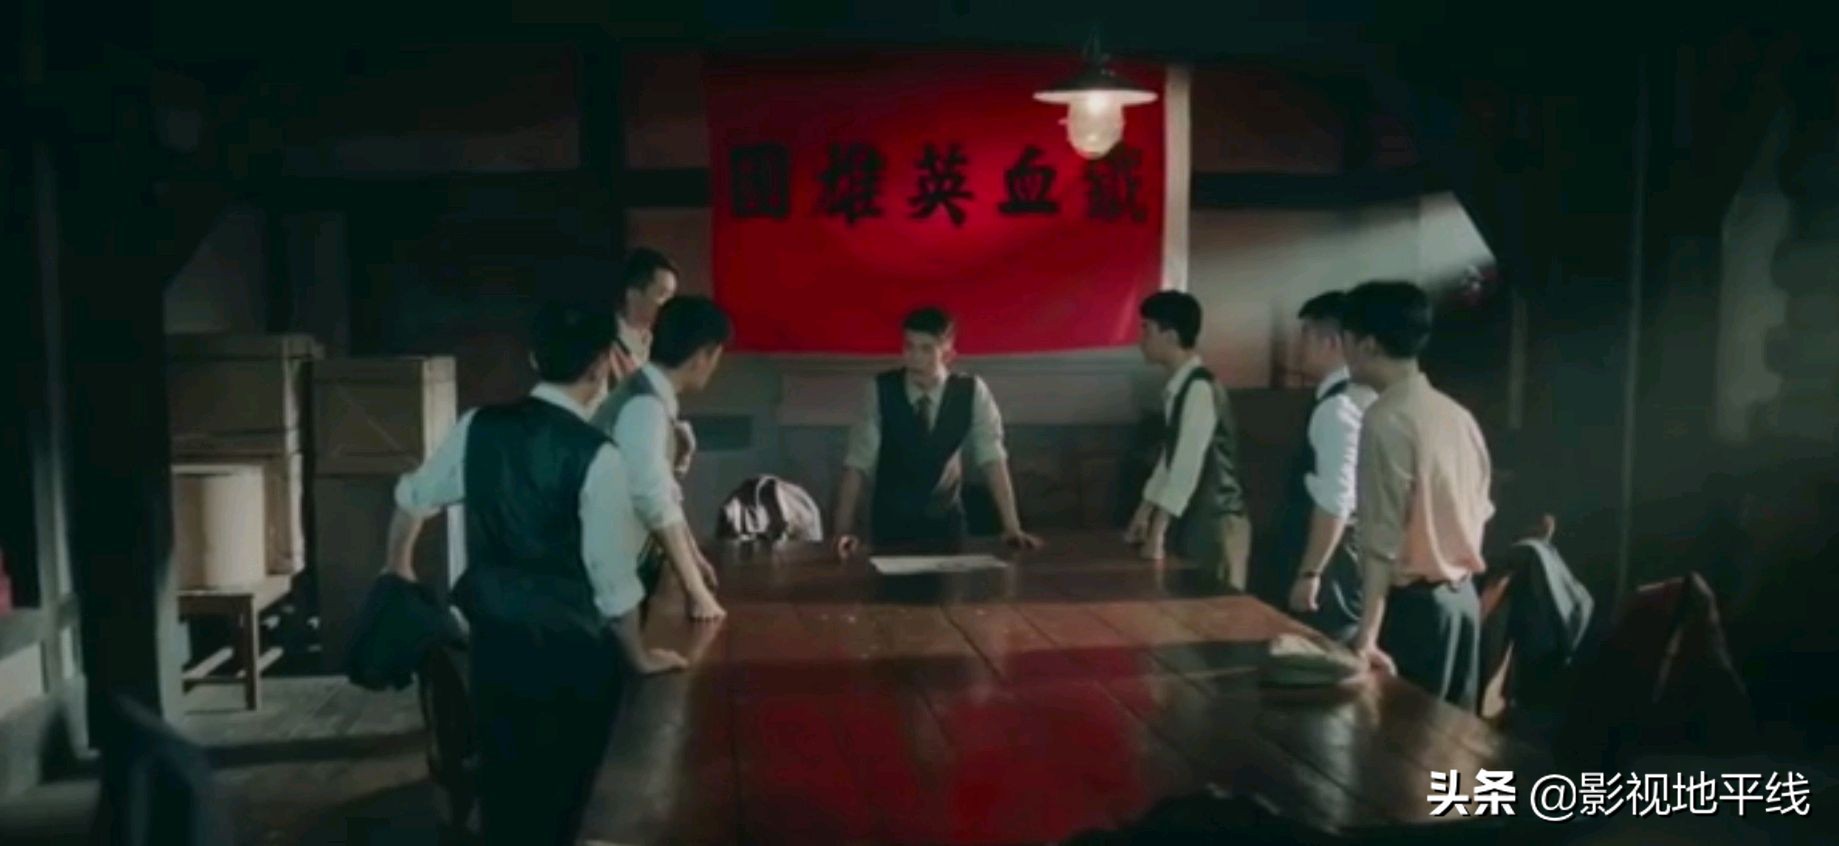 接着第8集，非常失望，杨志刚夸张的演技也只有郭靖宇的演技适合他。